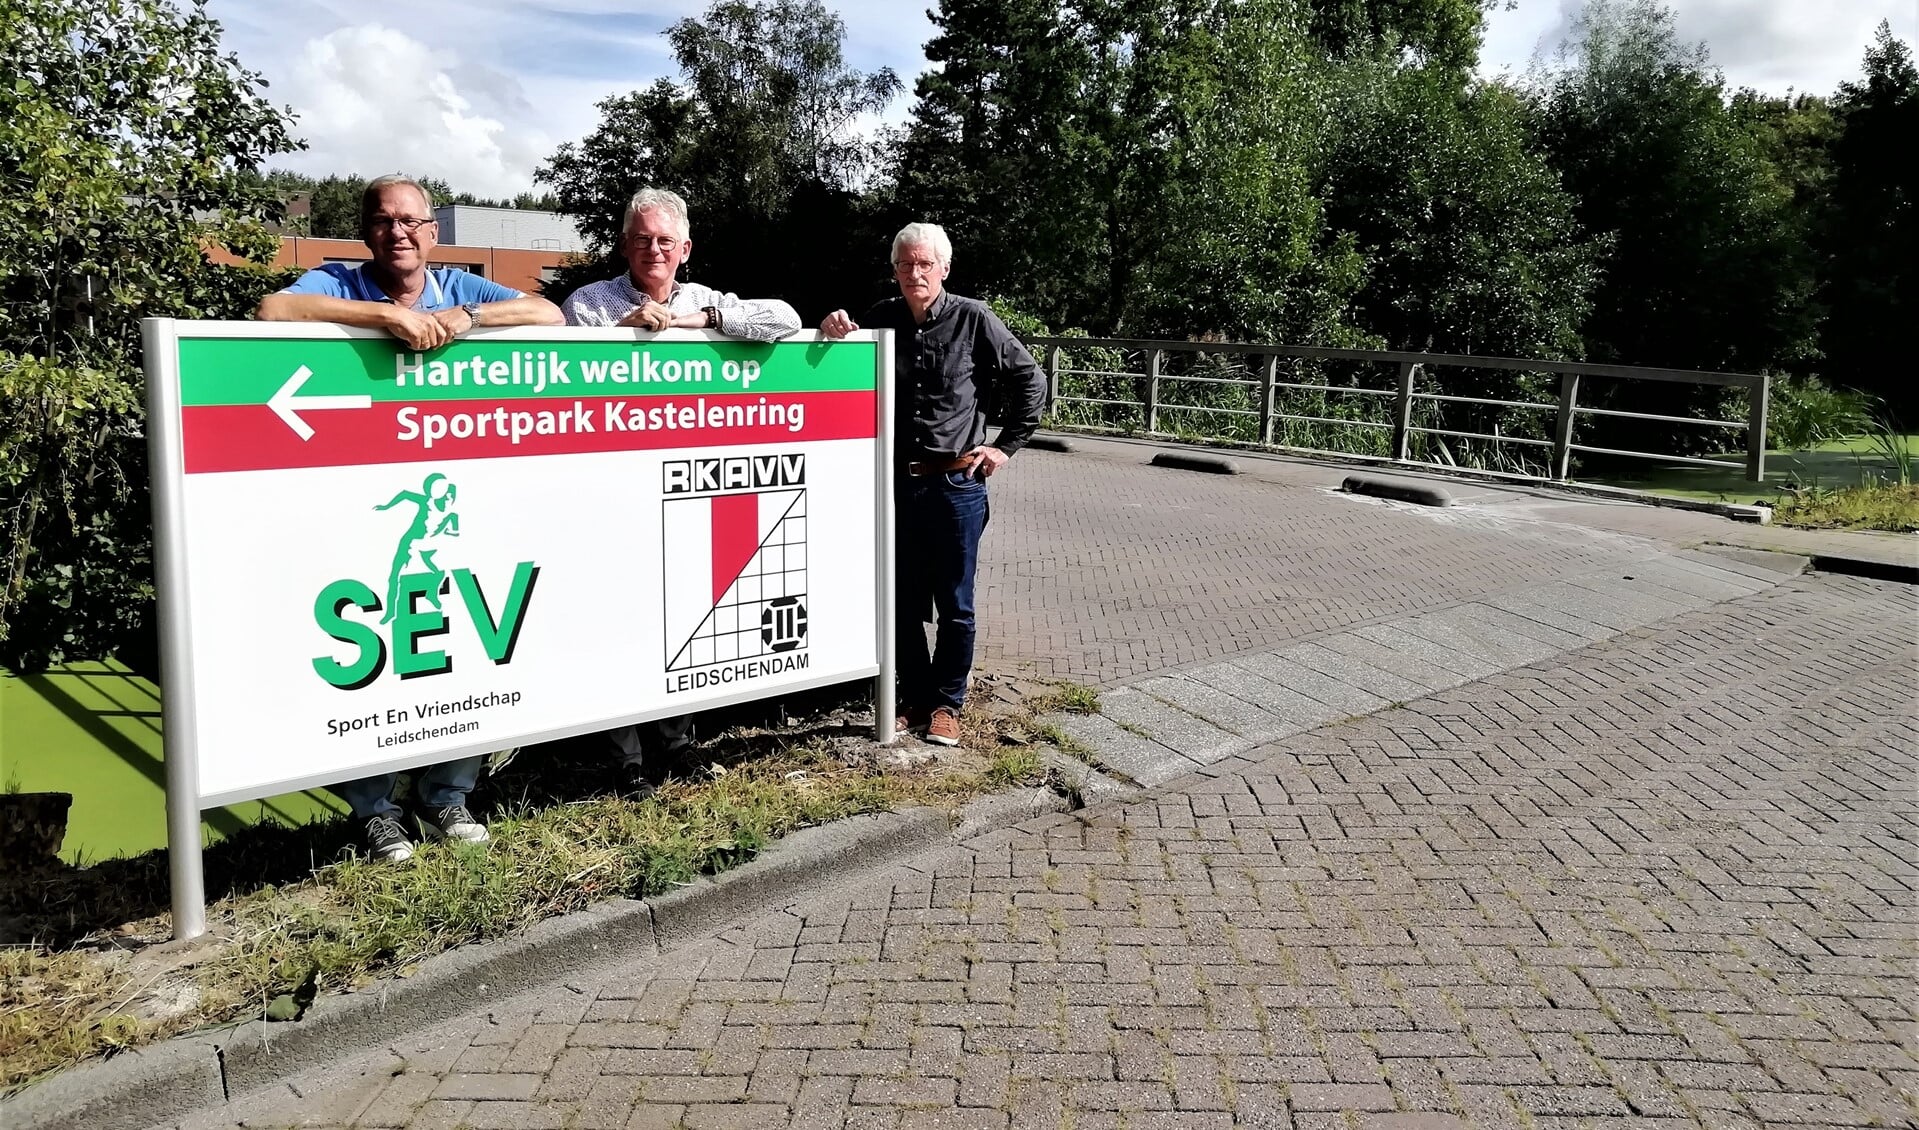 De voorzitters Rob de Ruiter (SEV), Frans van Rossen (RKAVV) en Willem van Dijk (Stichting Sportpark Kastelenring) presenteerden het bord.